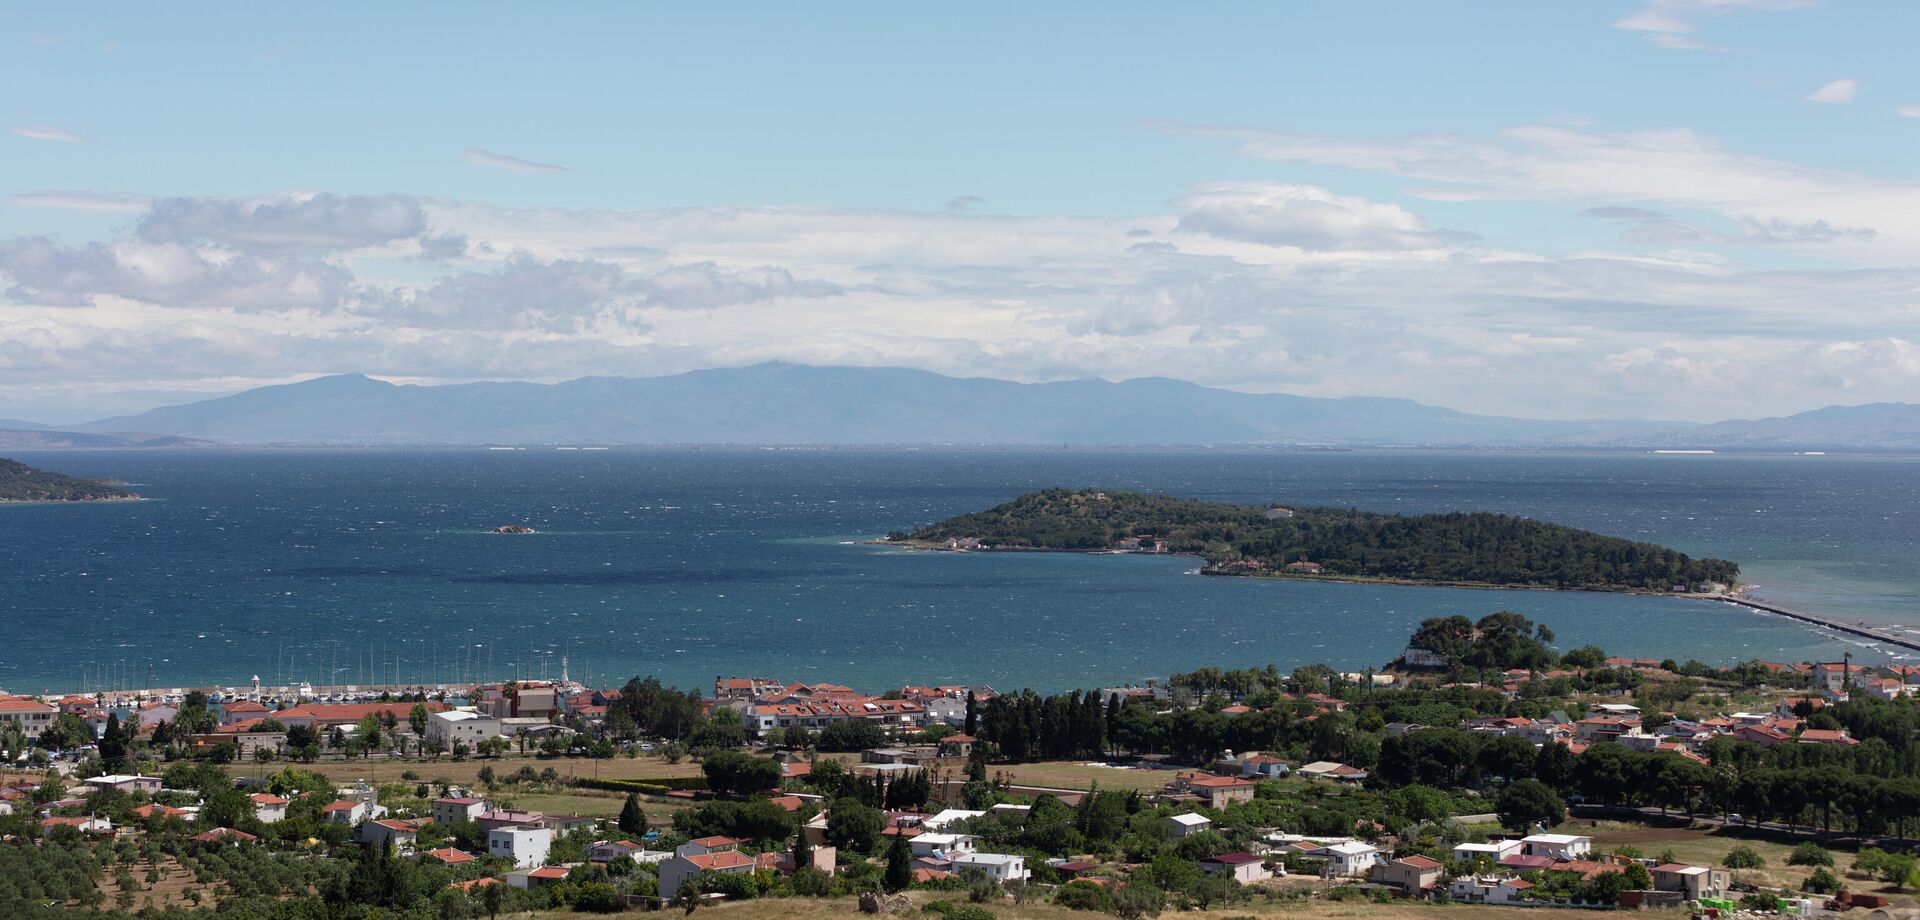 Панорамный вид на город Урла в турецкой провинции Измир